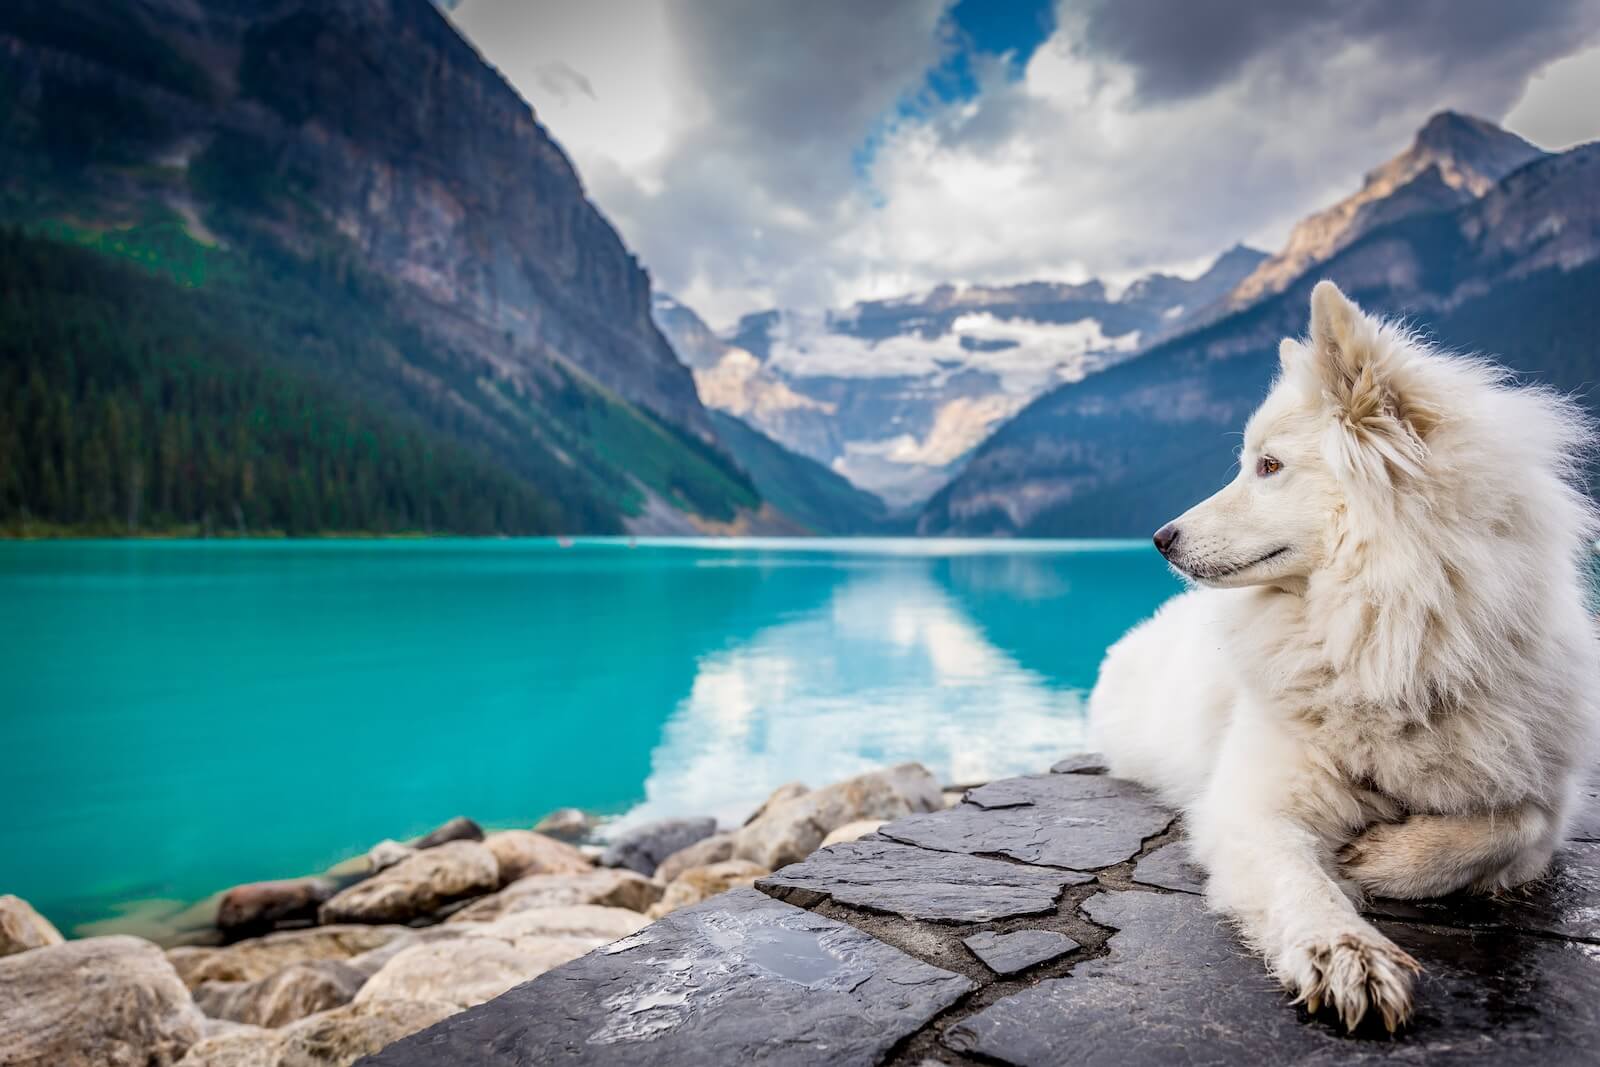 A Samoyed sitting beside a mountain lake